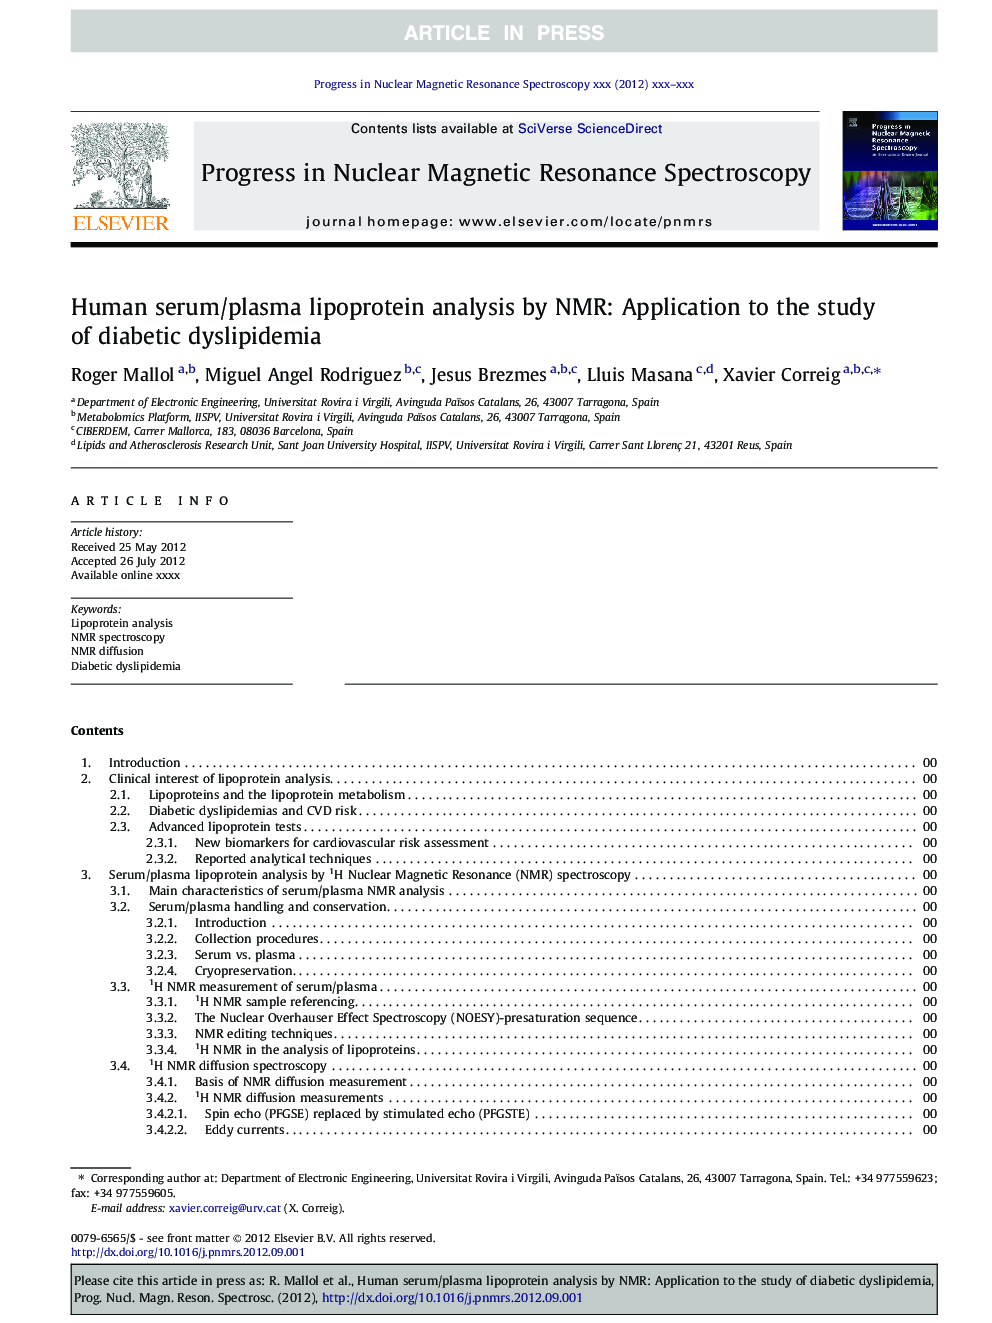 Human serum/plasma lipoprotein analysis by NMR: Application to the study of diabetic dyslipidemia